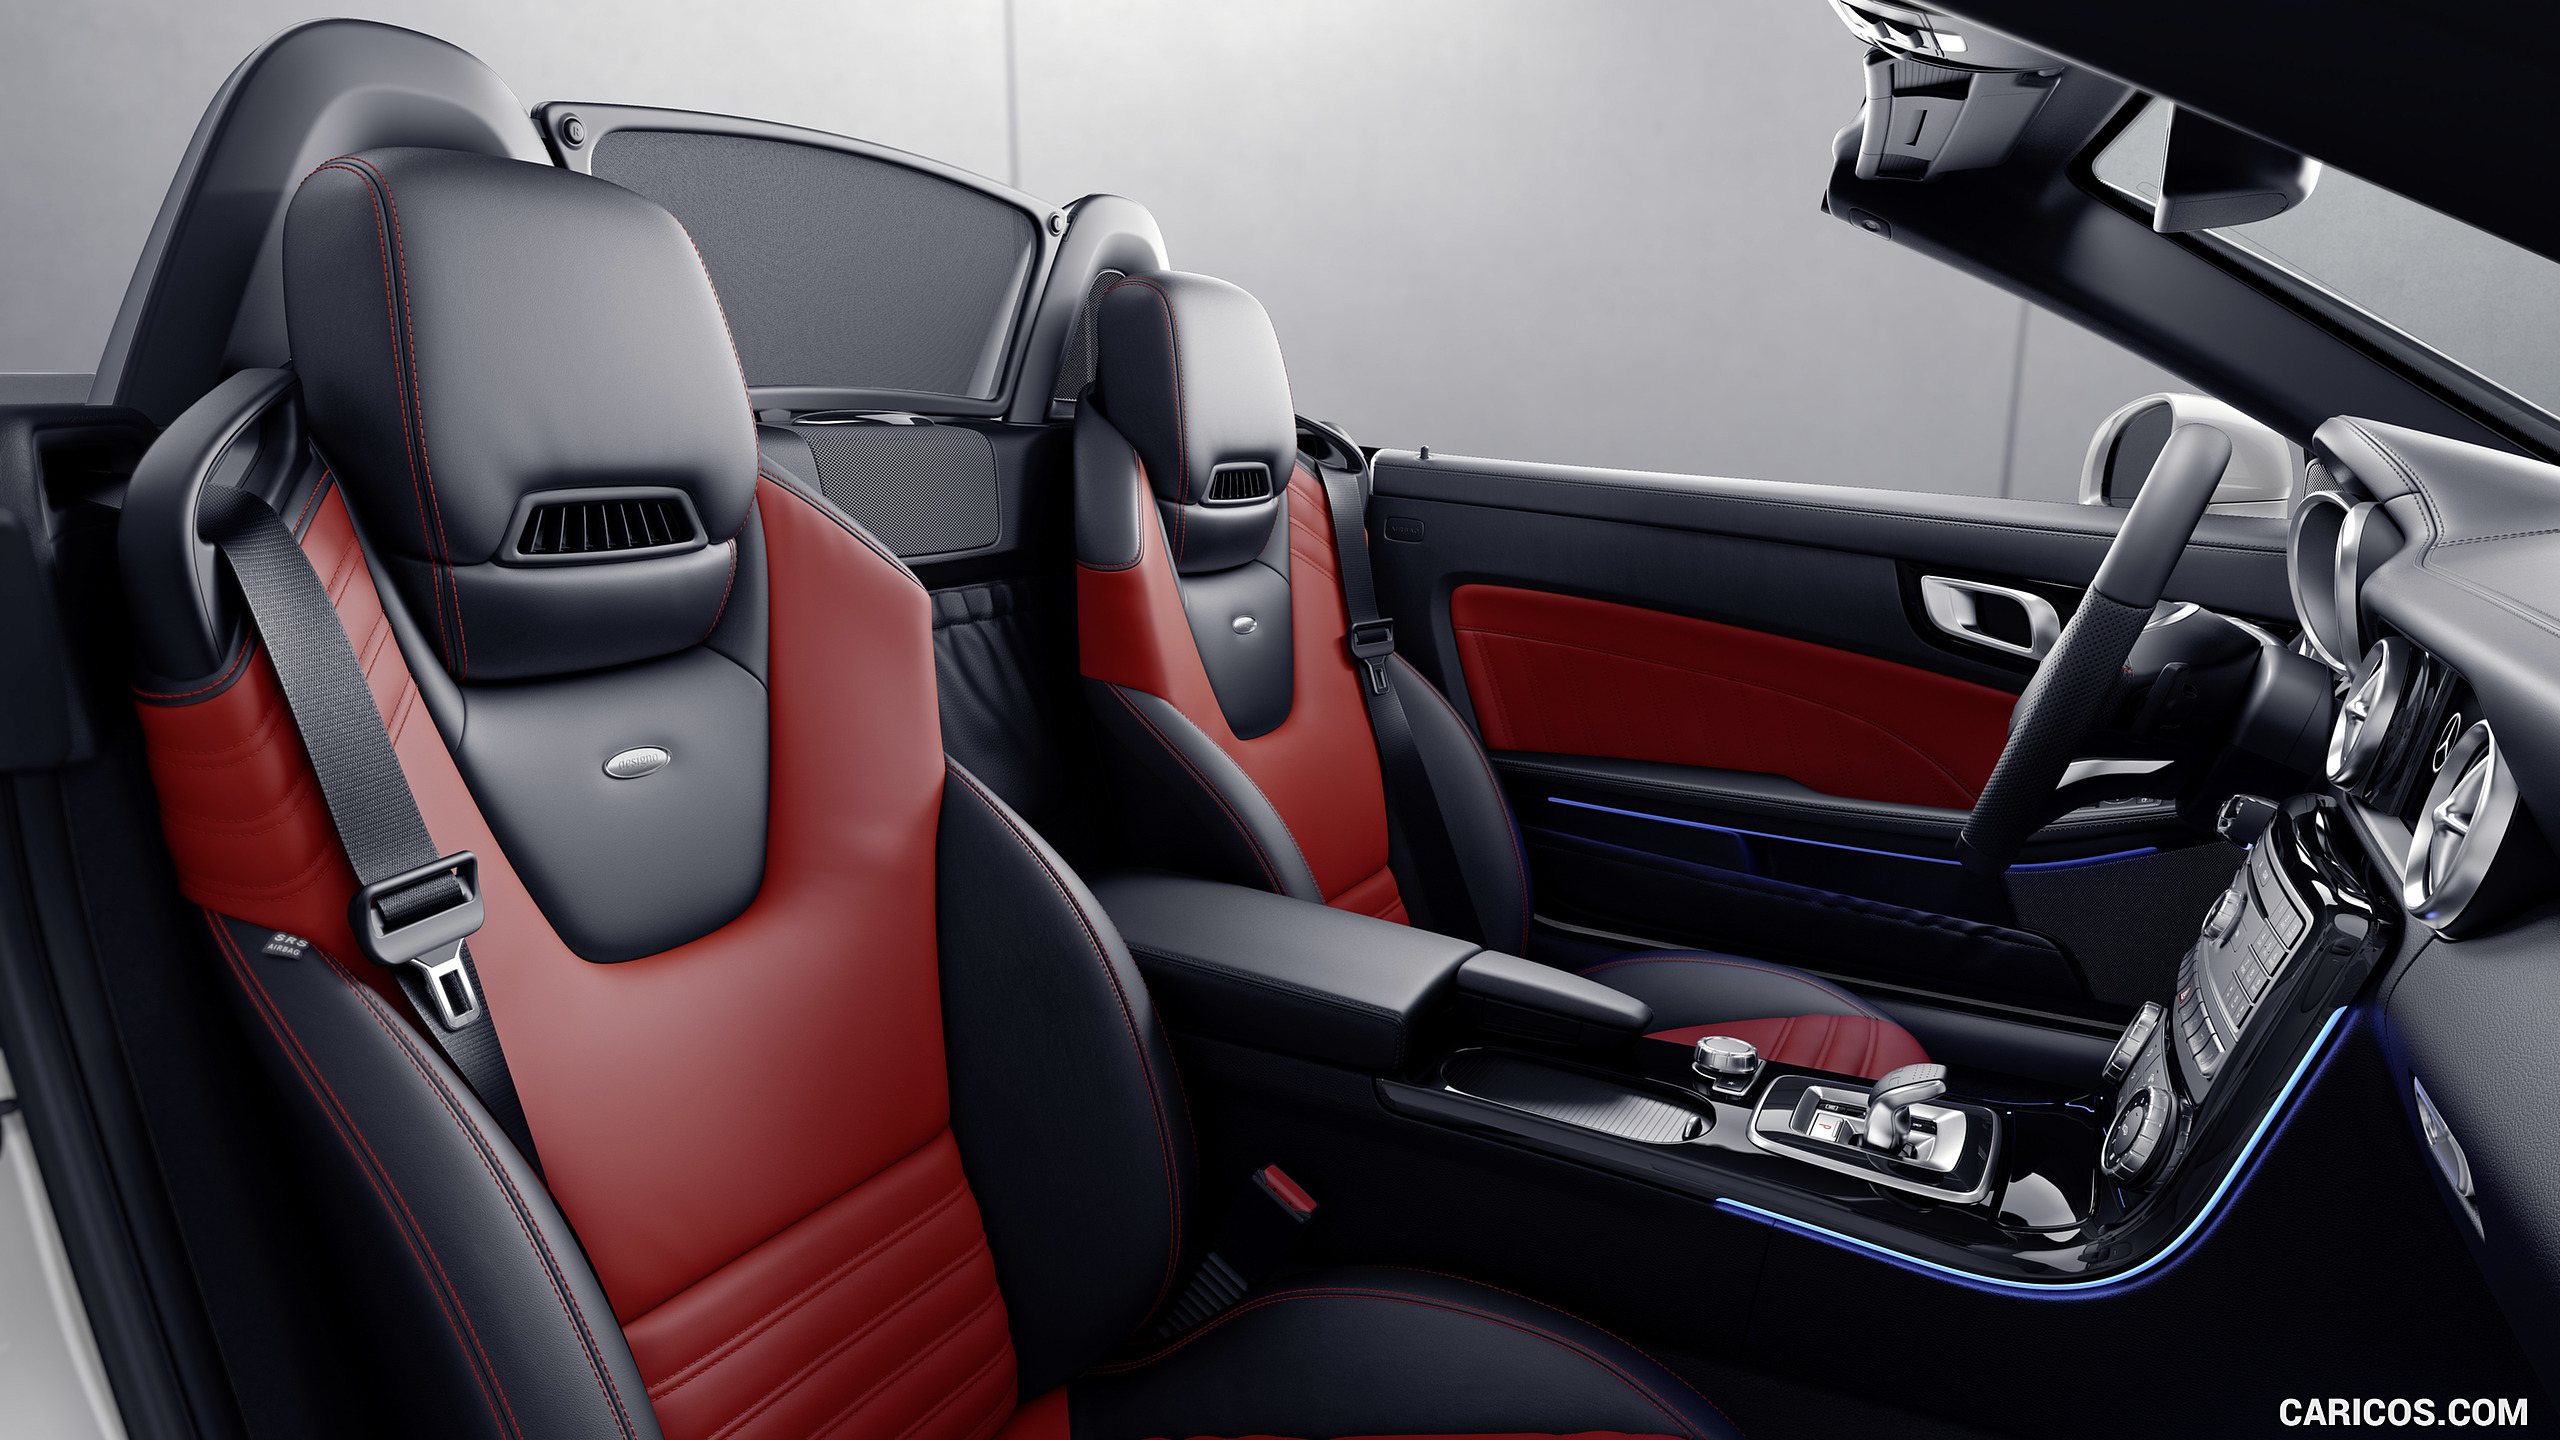 2017 Mercedes-Benz SLC RedArt Edition - Interior, Seats, #13 of 13